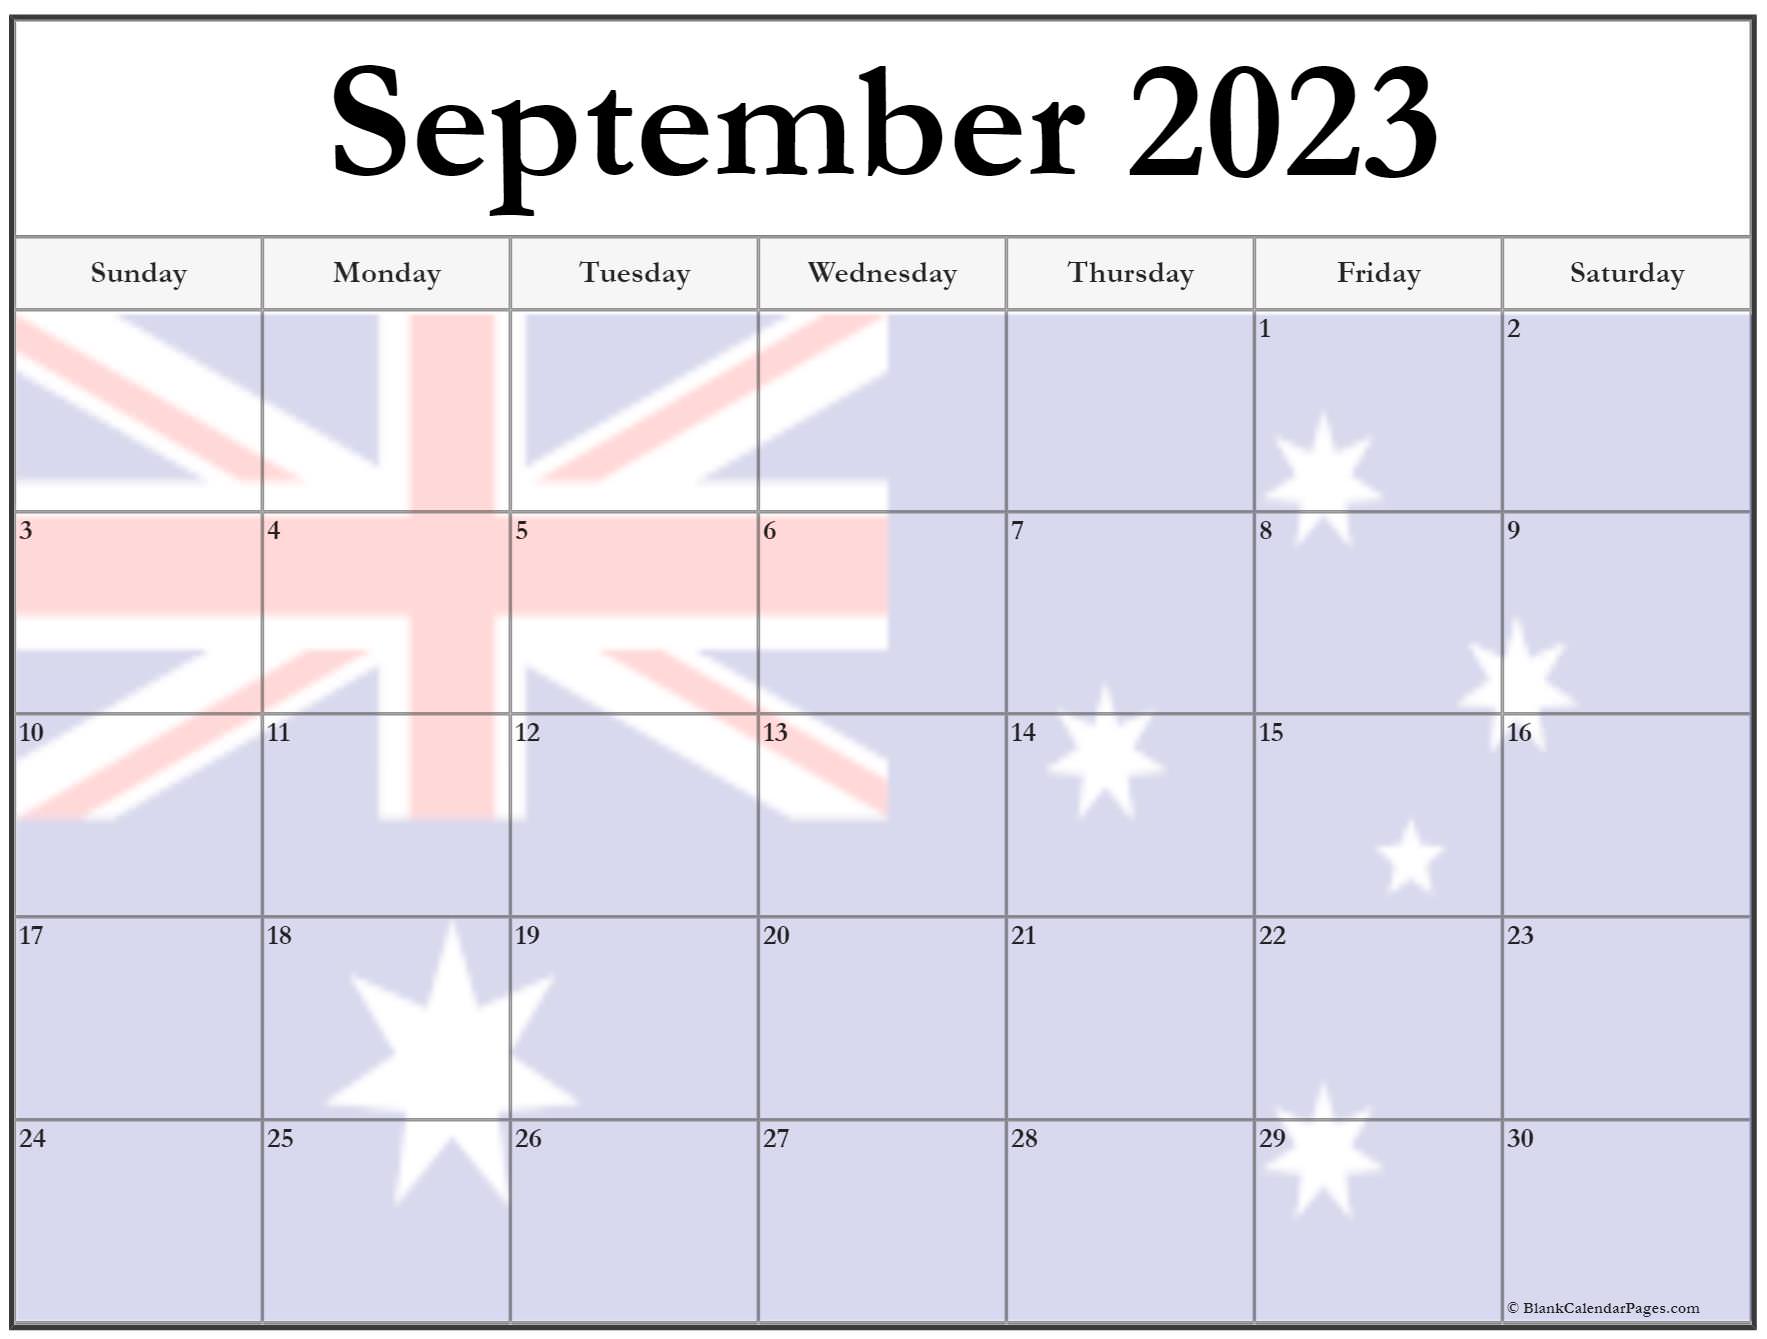 march-2023-calendar-canada-get-calendar-2023-update-september-2023